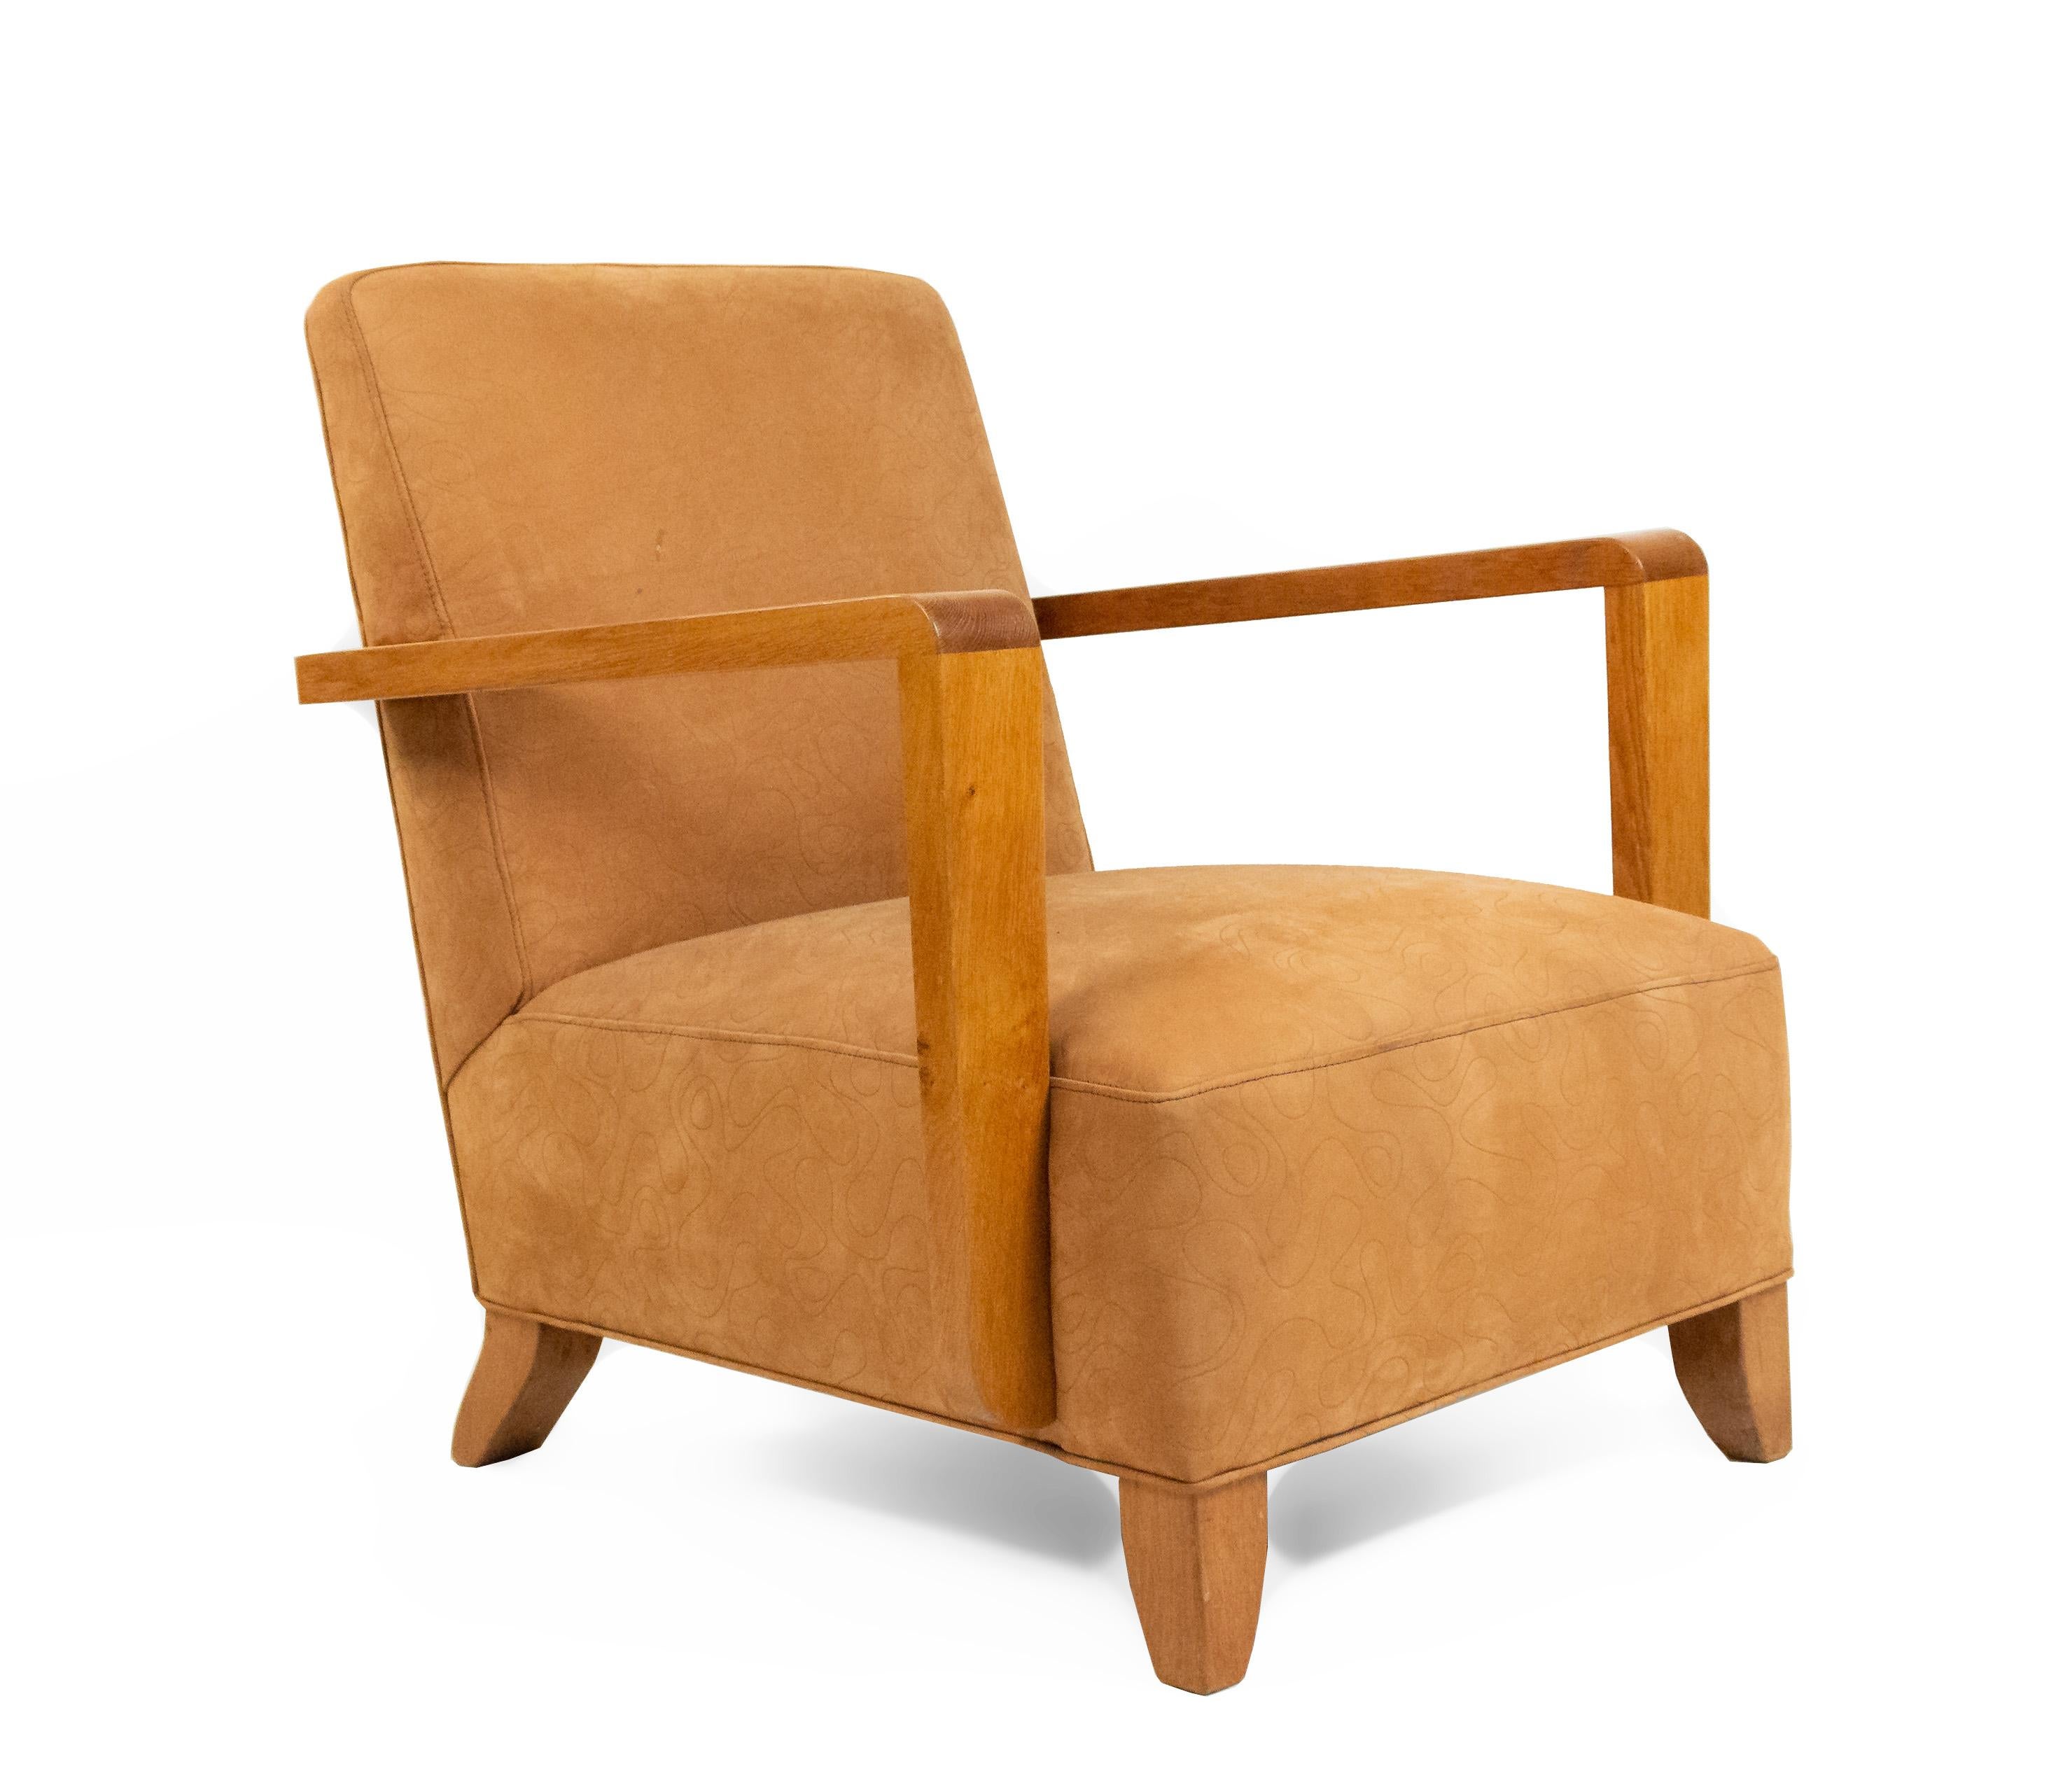 Paire de fauteuils ouverts en chêne, de forme géométrique (années 1940), dont l'assise et le dossier sont recouverts de daim beige avec un motif de gribouillis imprimé.